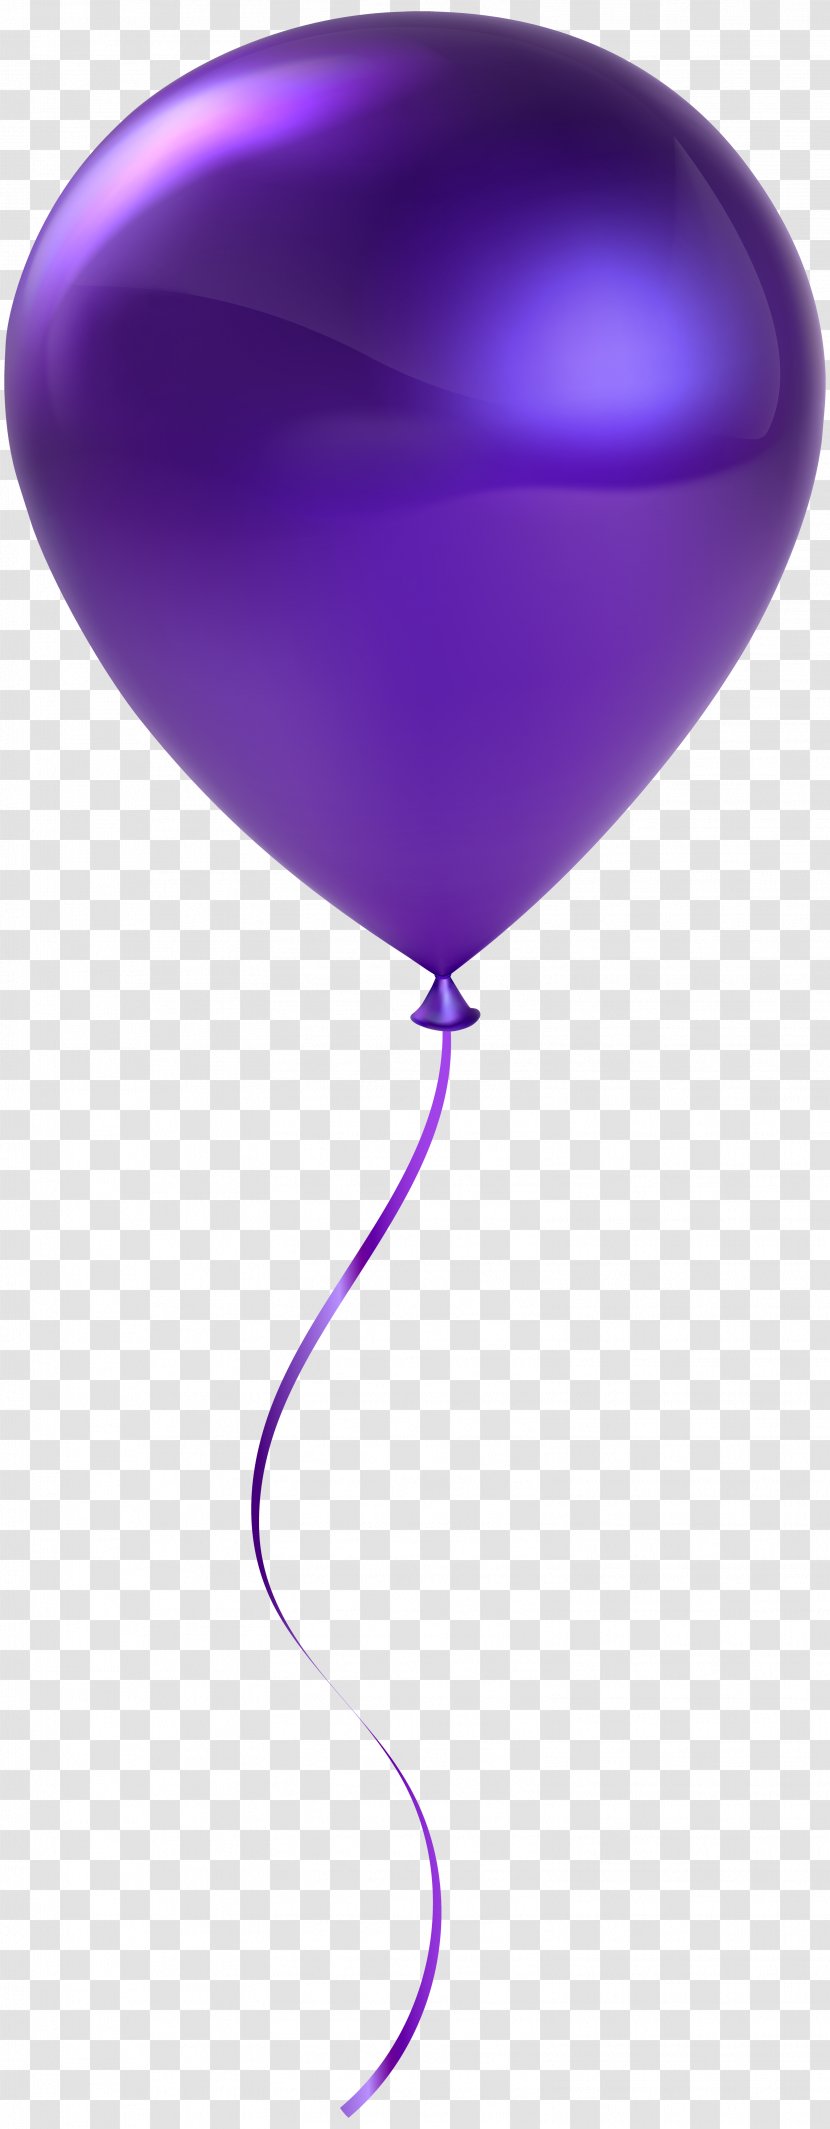 Purple Balloon - Single Transparent Clip Art Transparent PNG